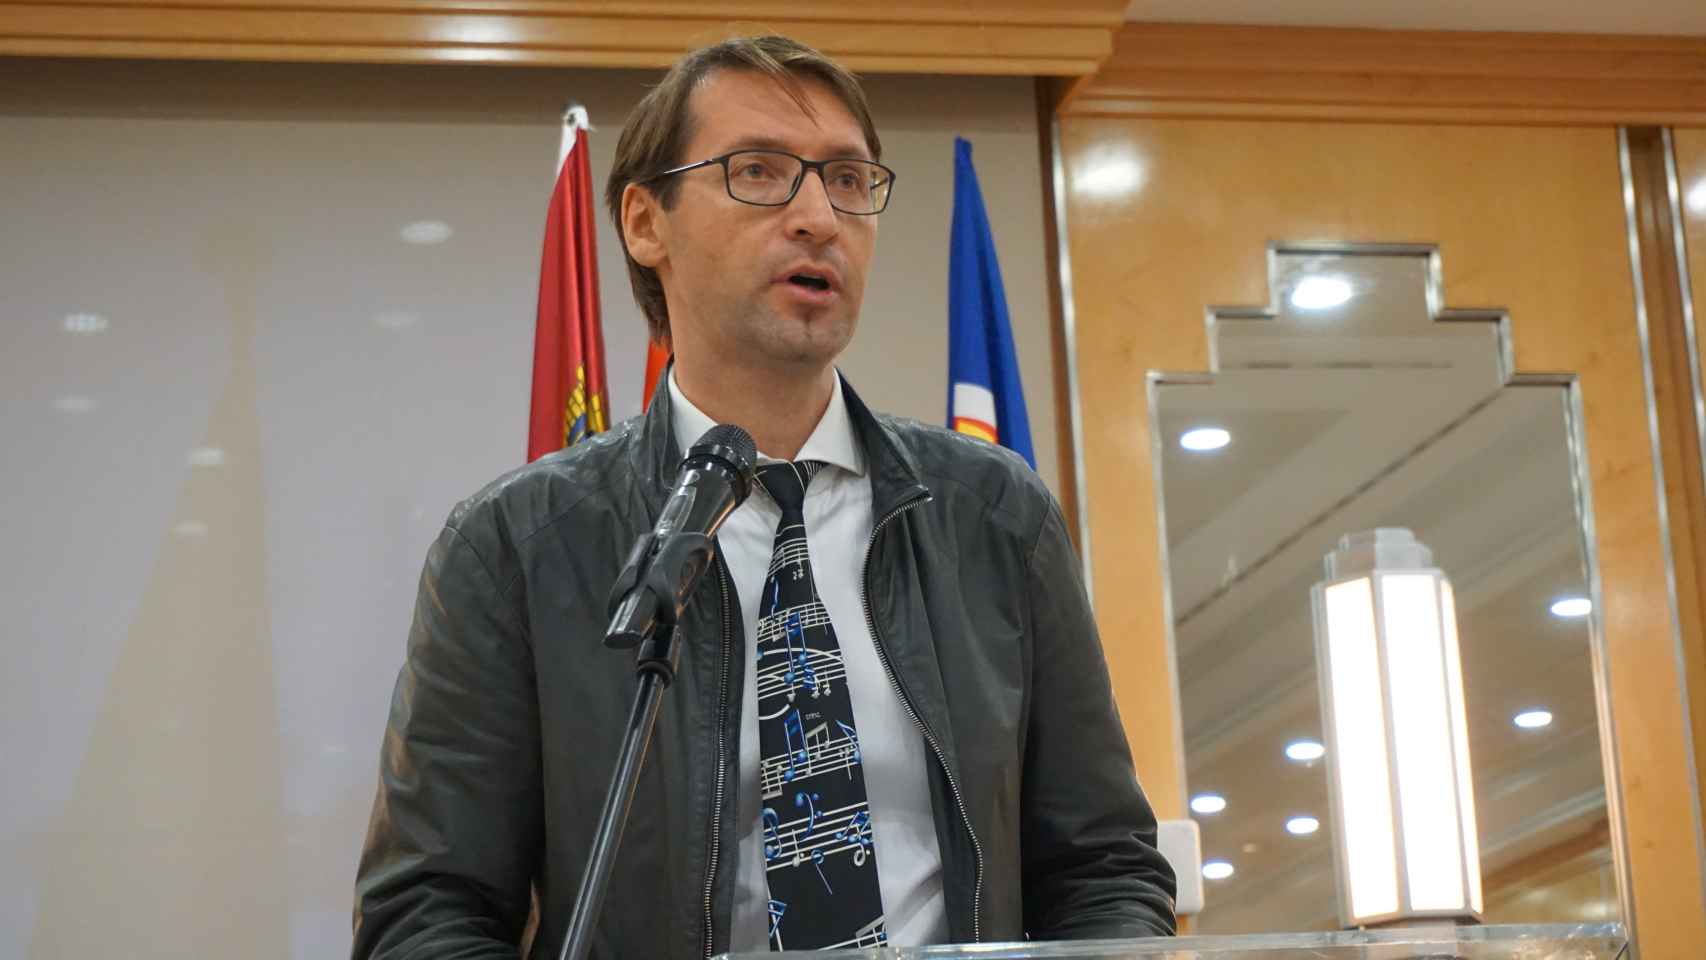 Stanislav Shevchuk en una conferencia organizada en 2019 por Democracia Nacional. Acudió como representante del Movimiento Imperial Ruso, en nombre de Boroviov, según DN.